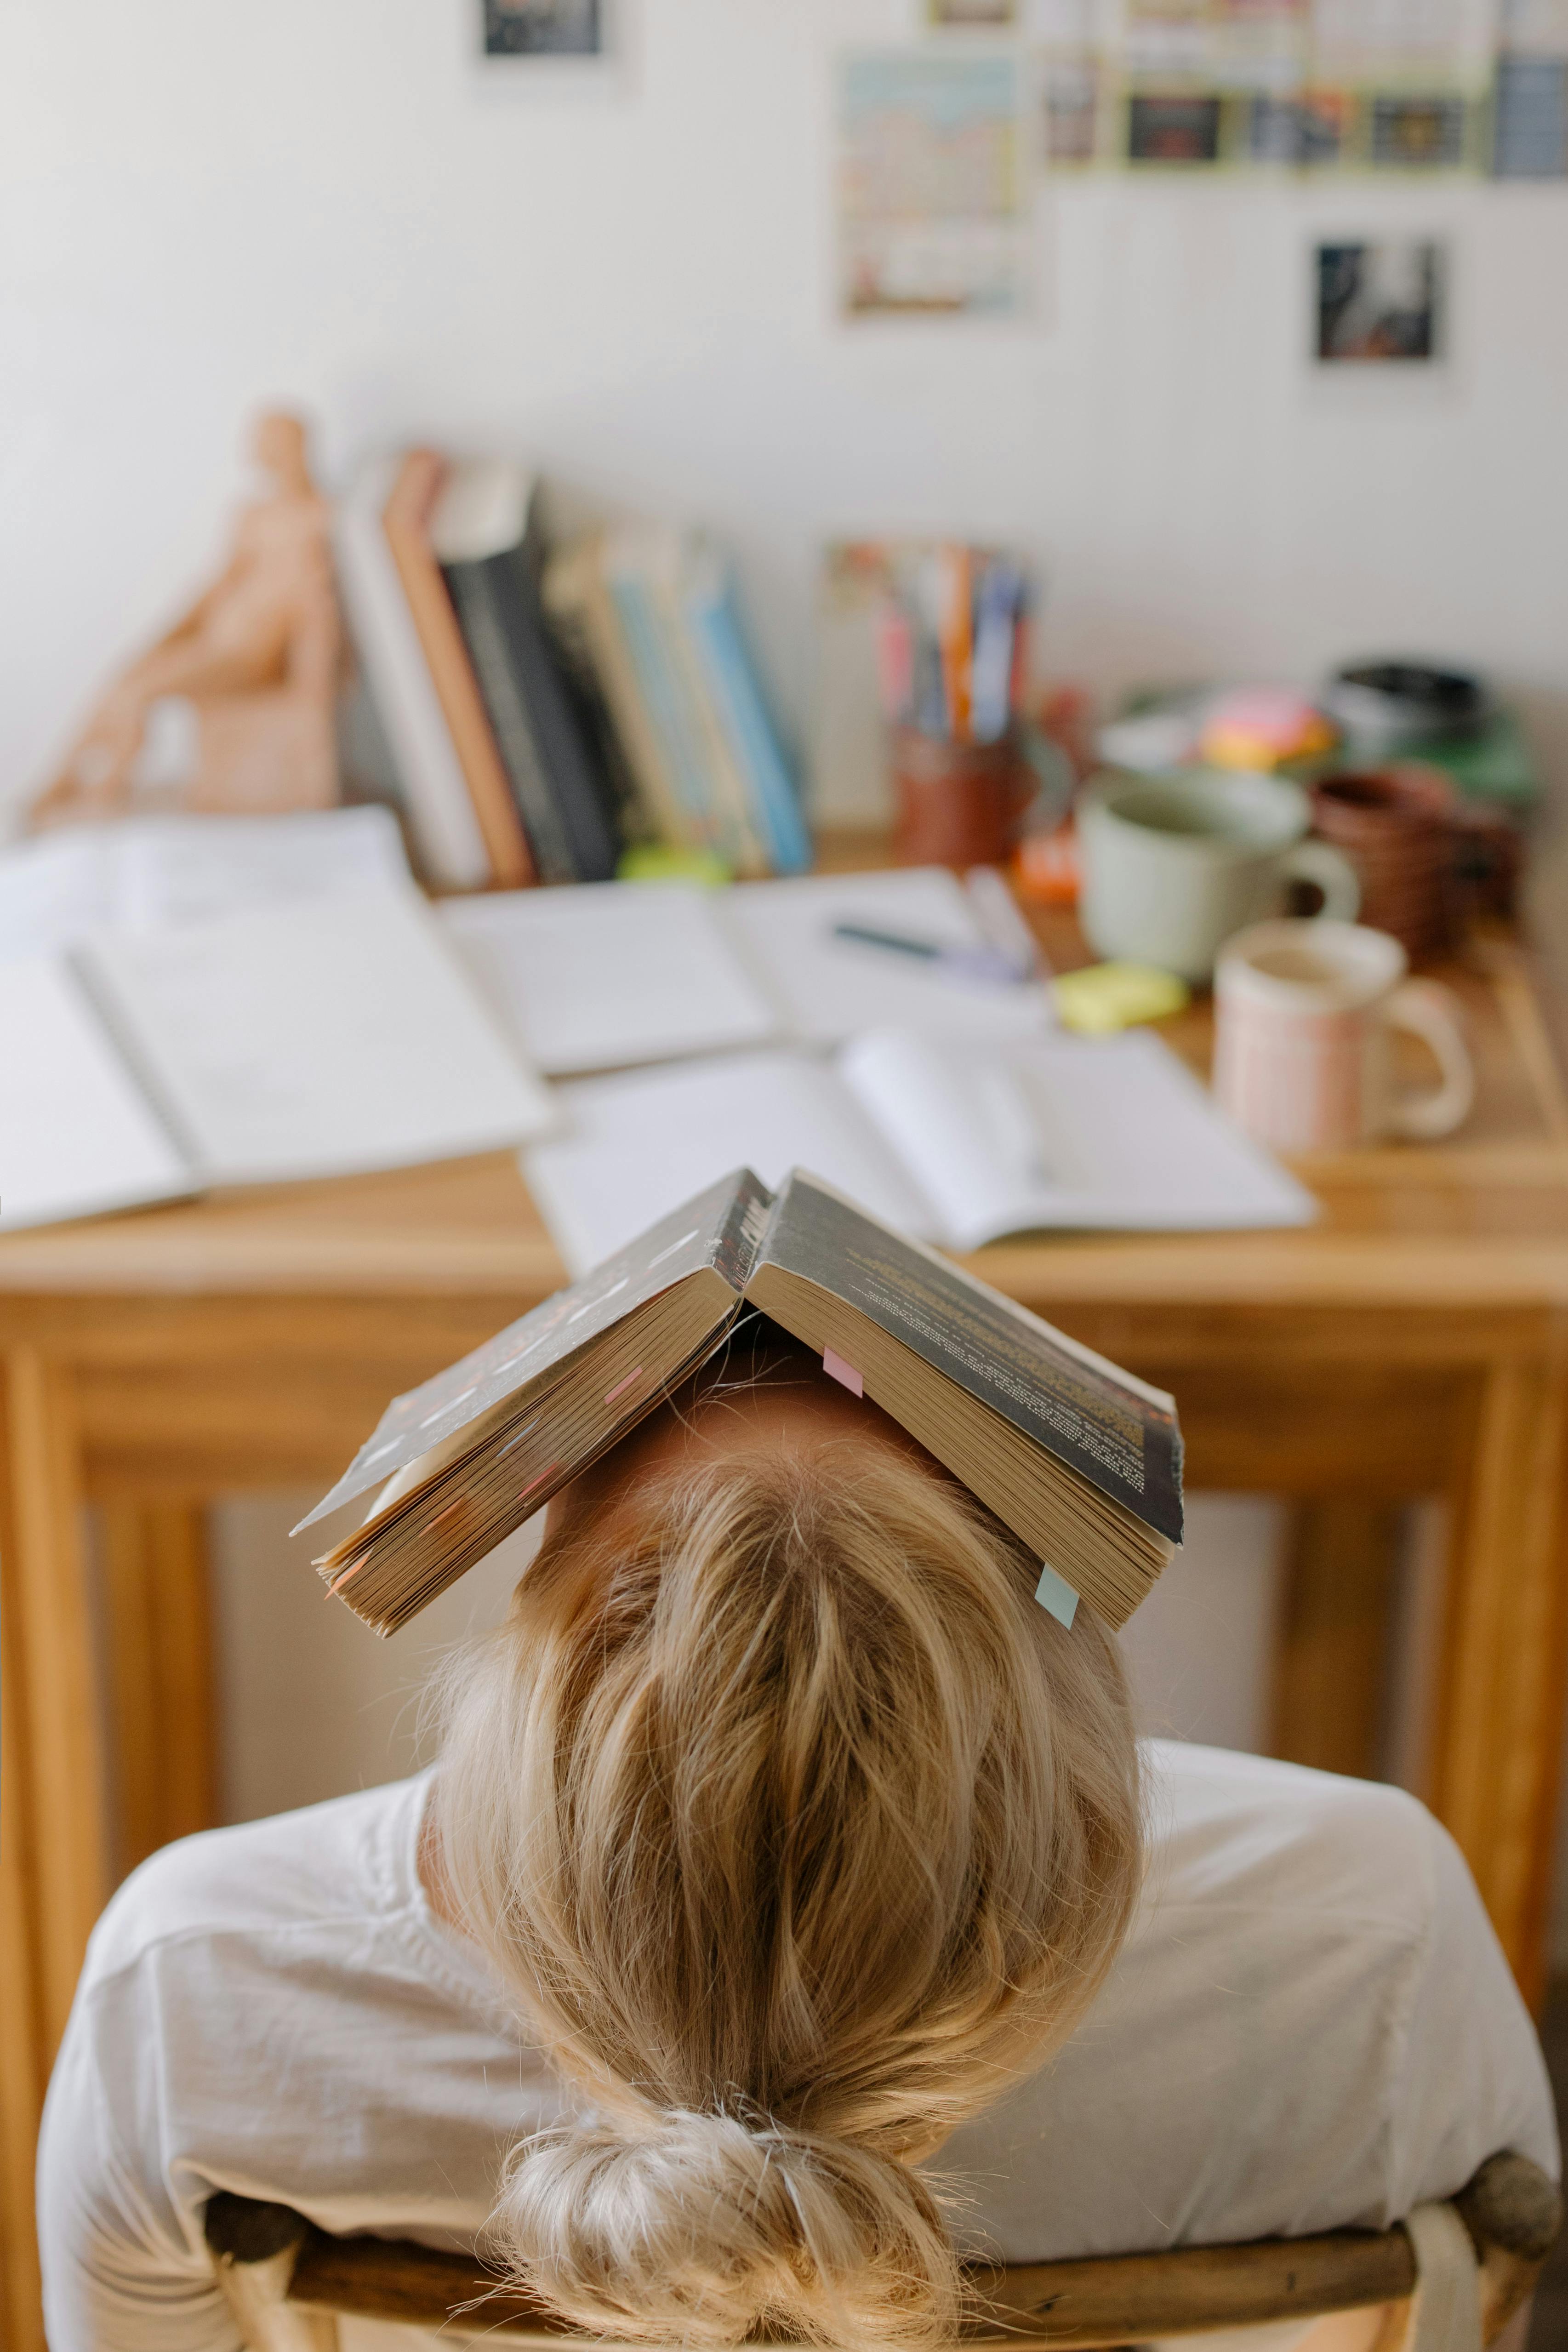 Ein müder Schüler mit einem Buch | Quelle: Pexels